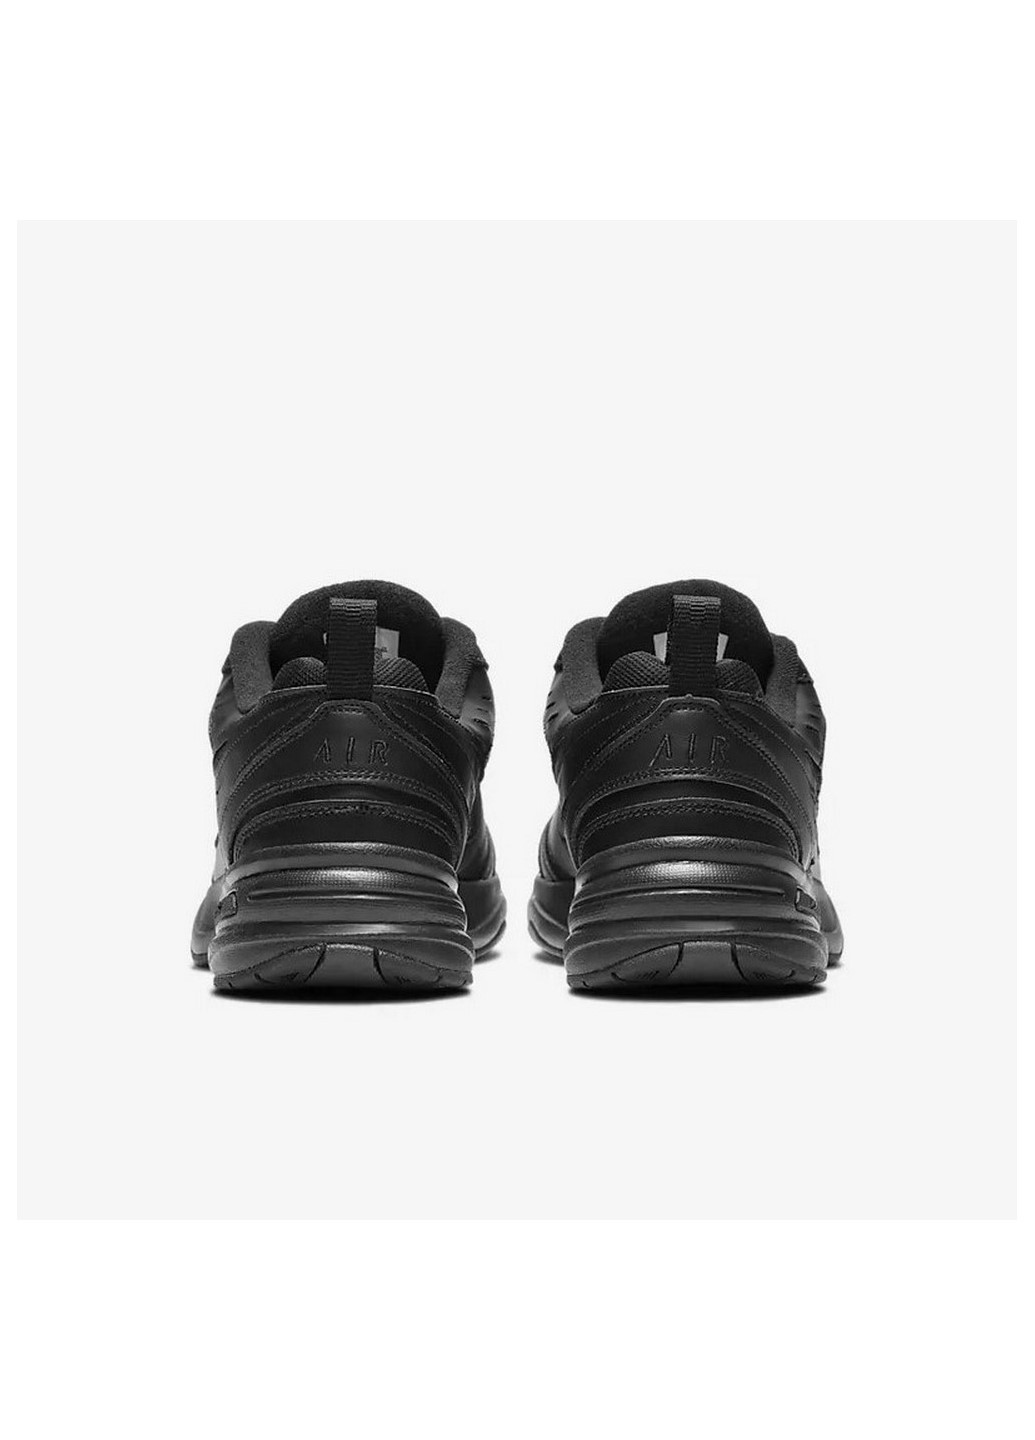 Черные всесезонные кроссовки мужские 415445-001 Nike AIR MONARCH IV